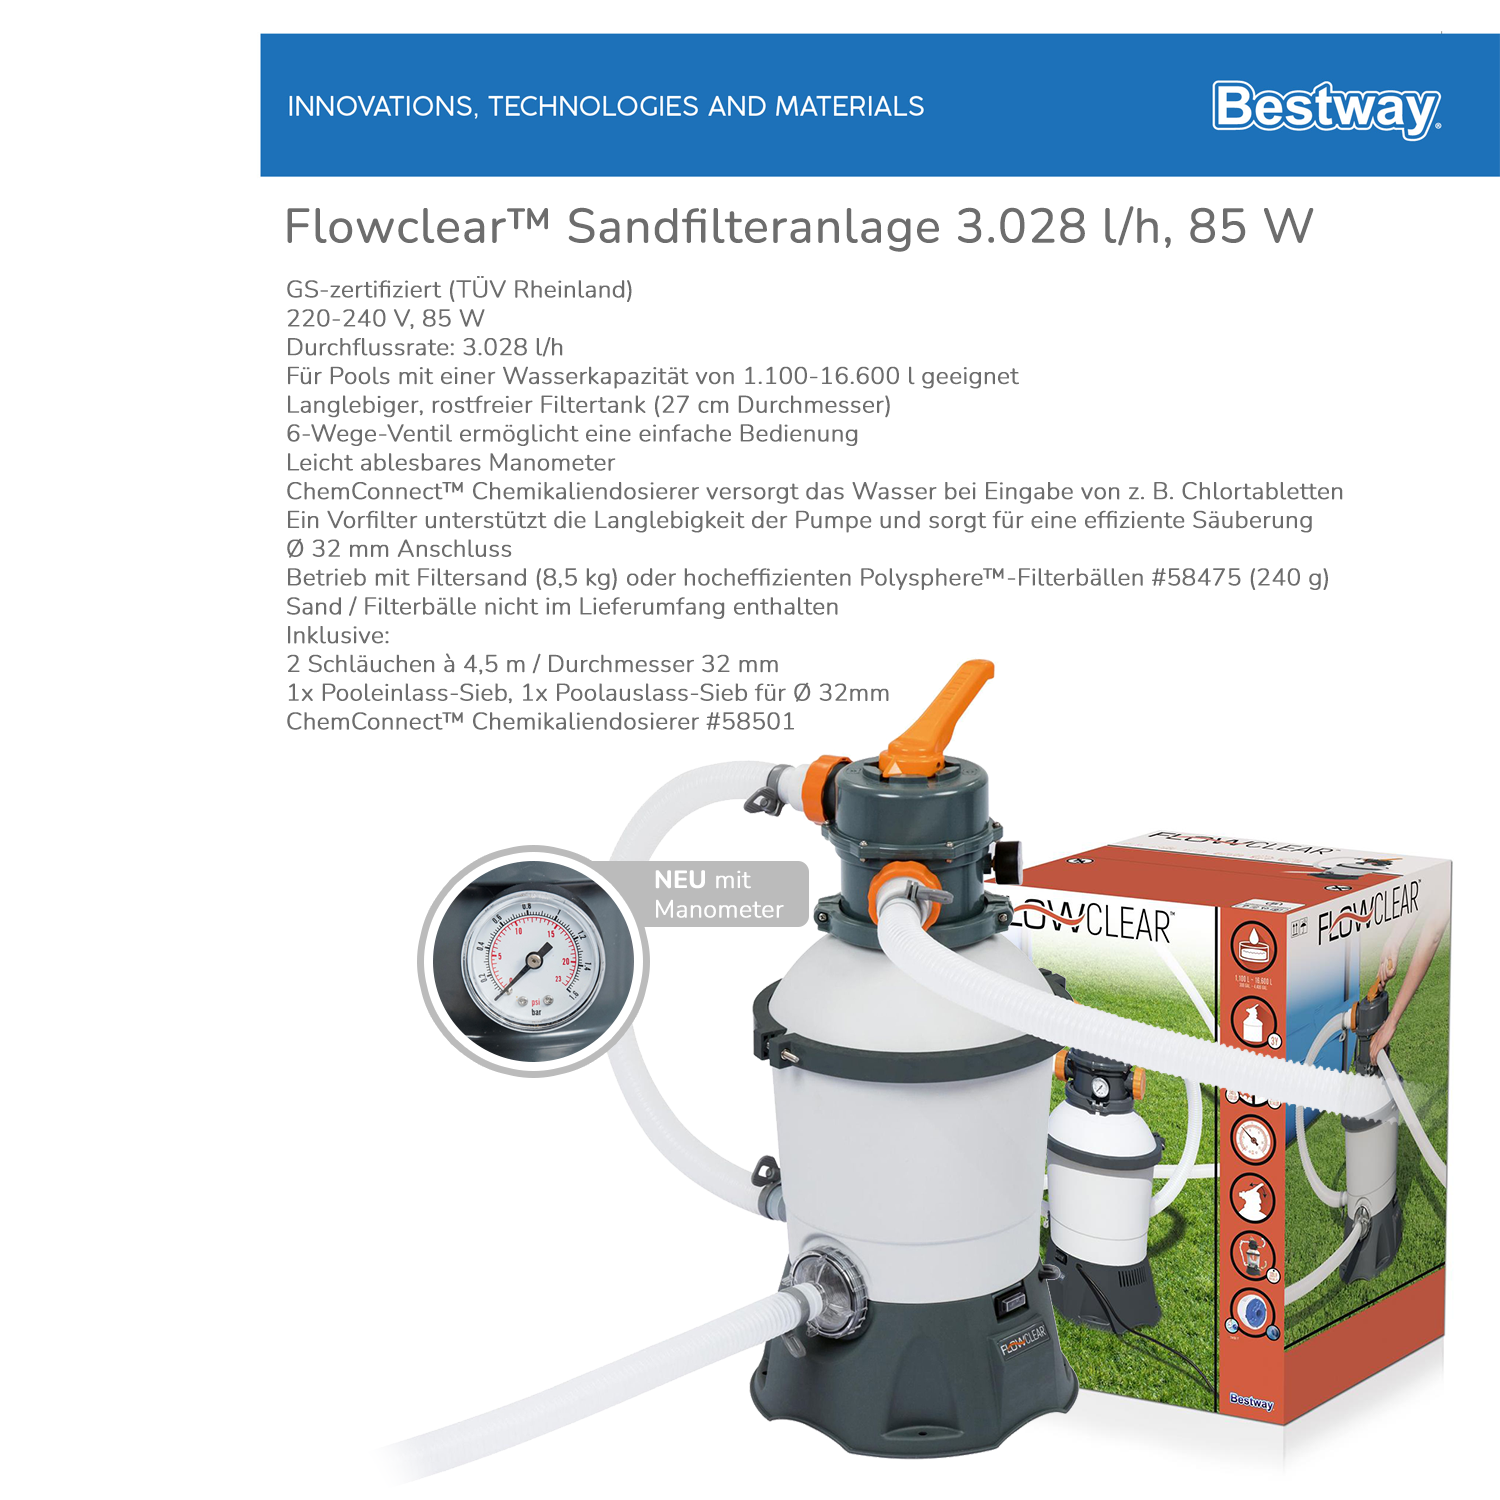 Bestway Pumpe Filterpumpe Sandfilterpumpe es Weil – Pool Zuhause Panorama24 ist! - dein Flowclear Onlineshop Filteranlage